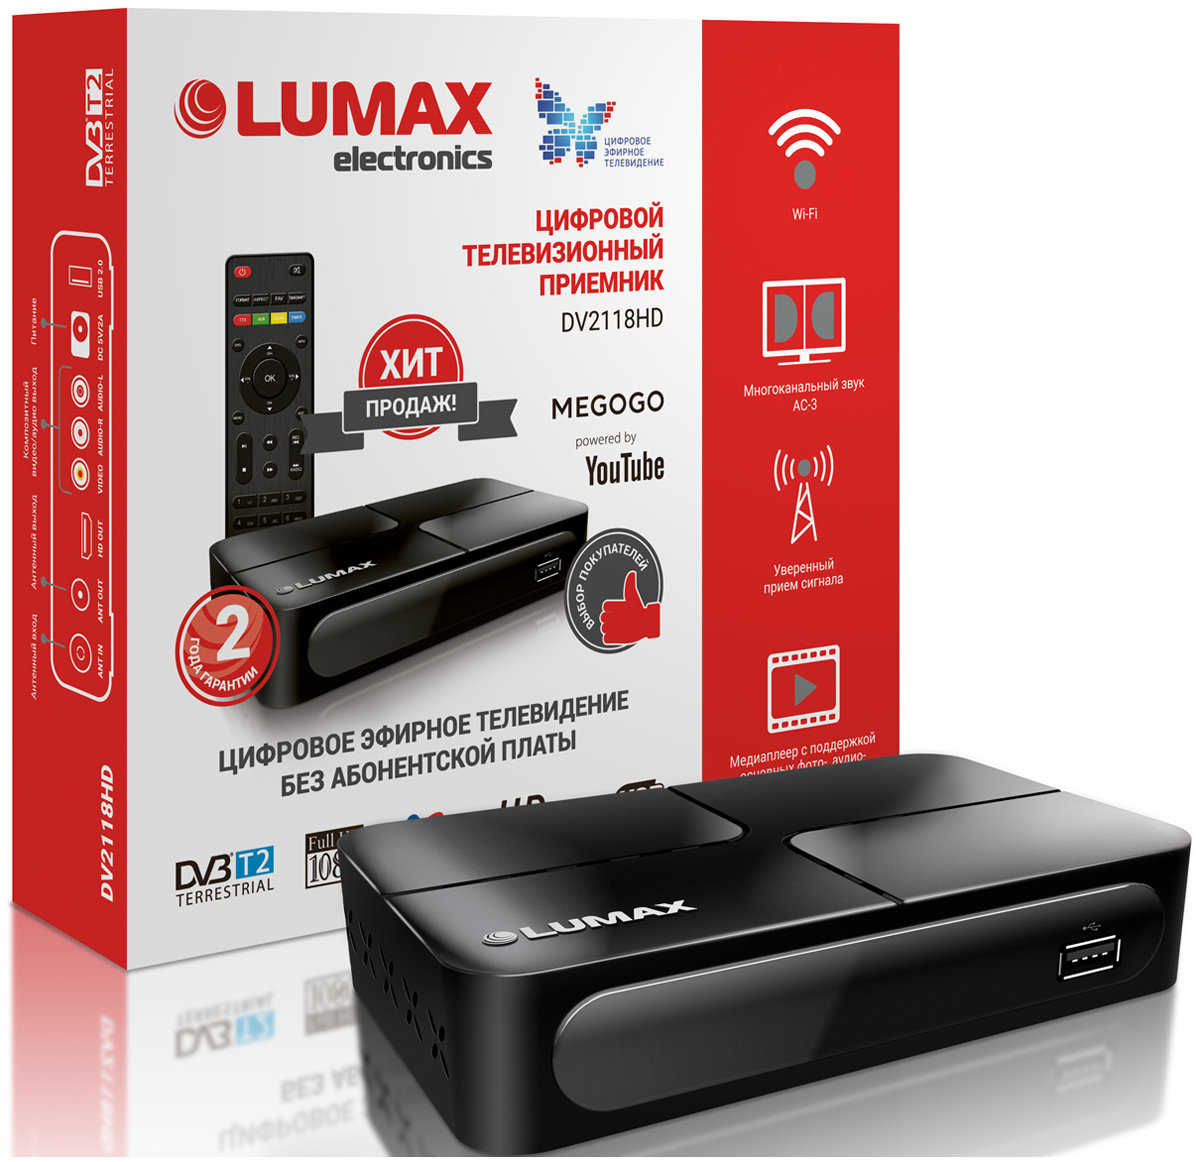 Цифровой телевизионный ресивер Lumax DV 2118 HD цифровой телевизионный ресивер lumax dv 1120 hd